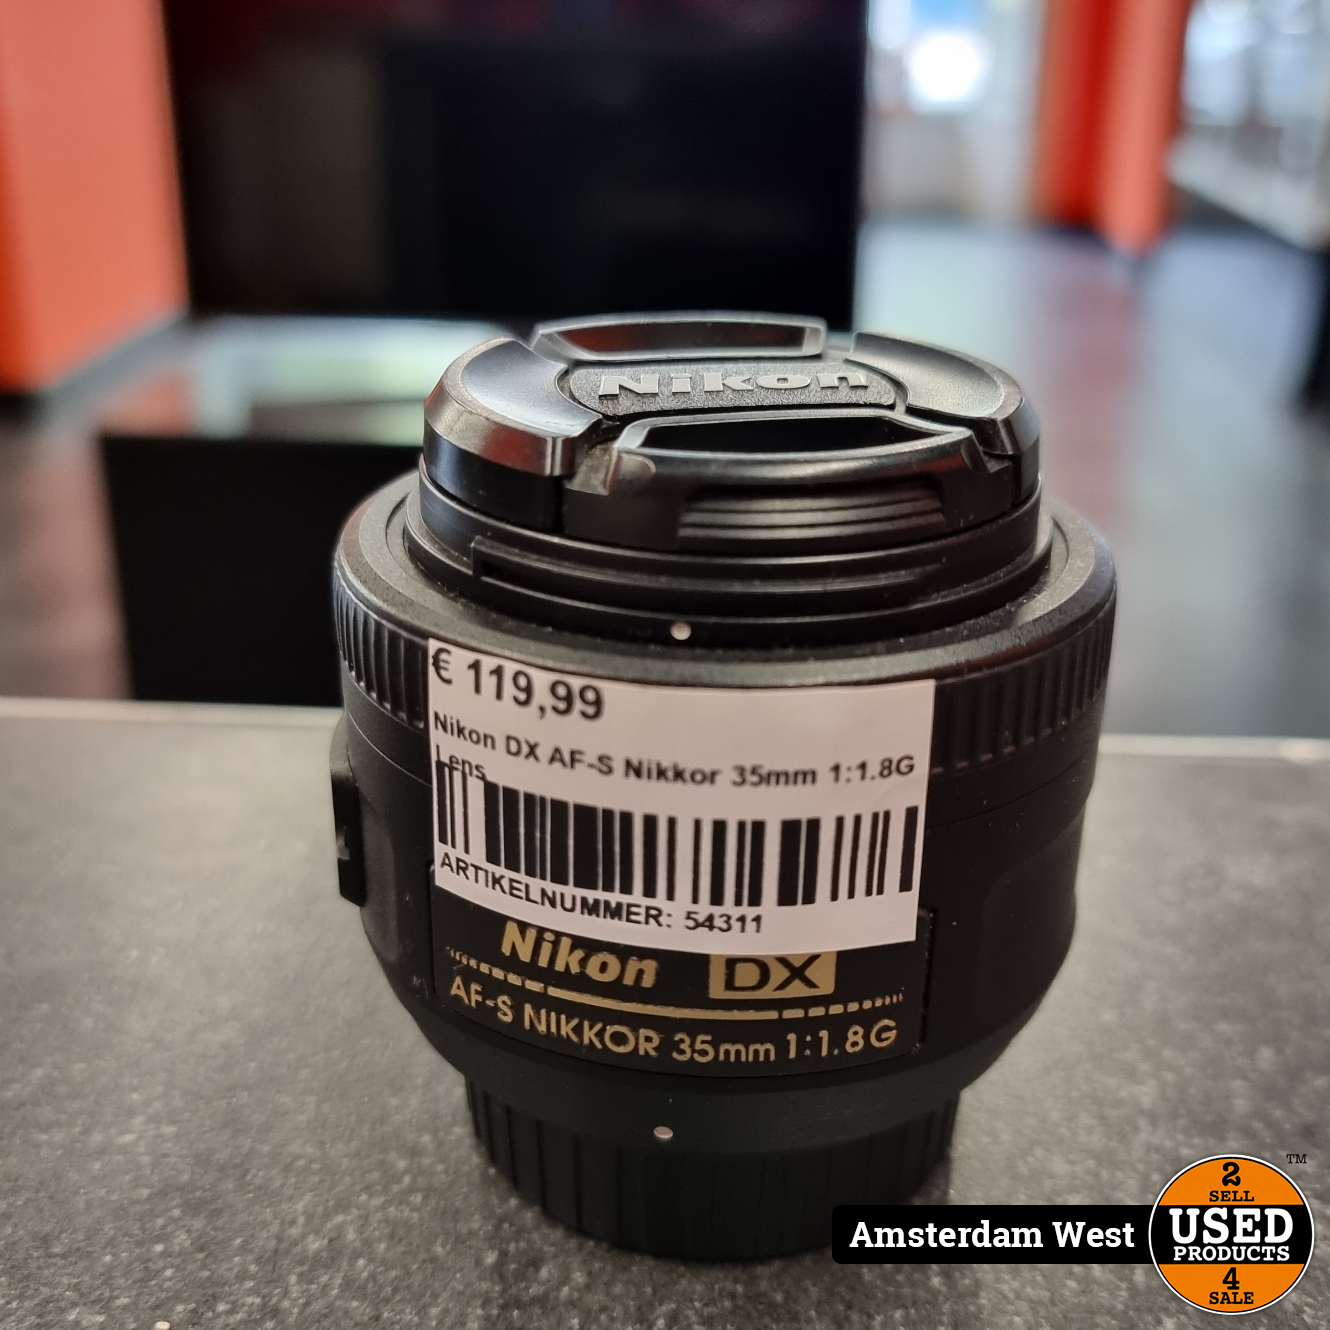 Nikon DX AF S Nikkor 35mm 1:1.8G Lens - Used Products Amsterdam West